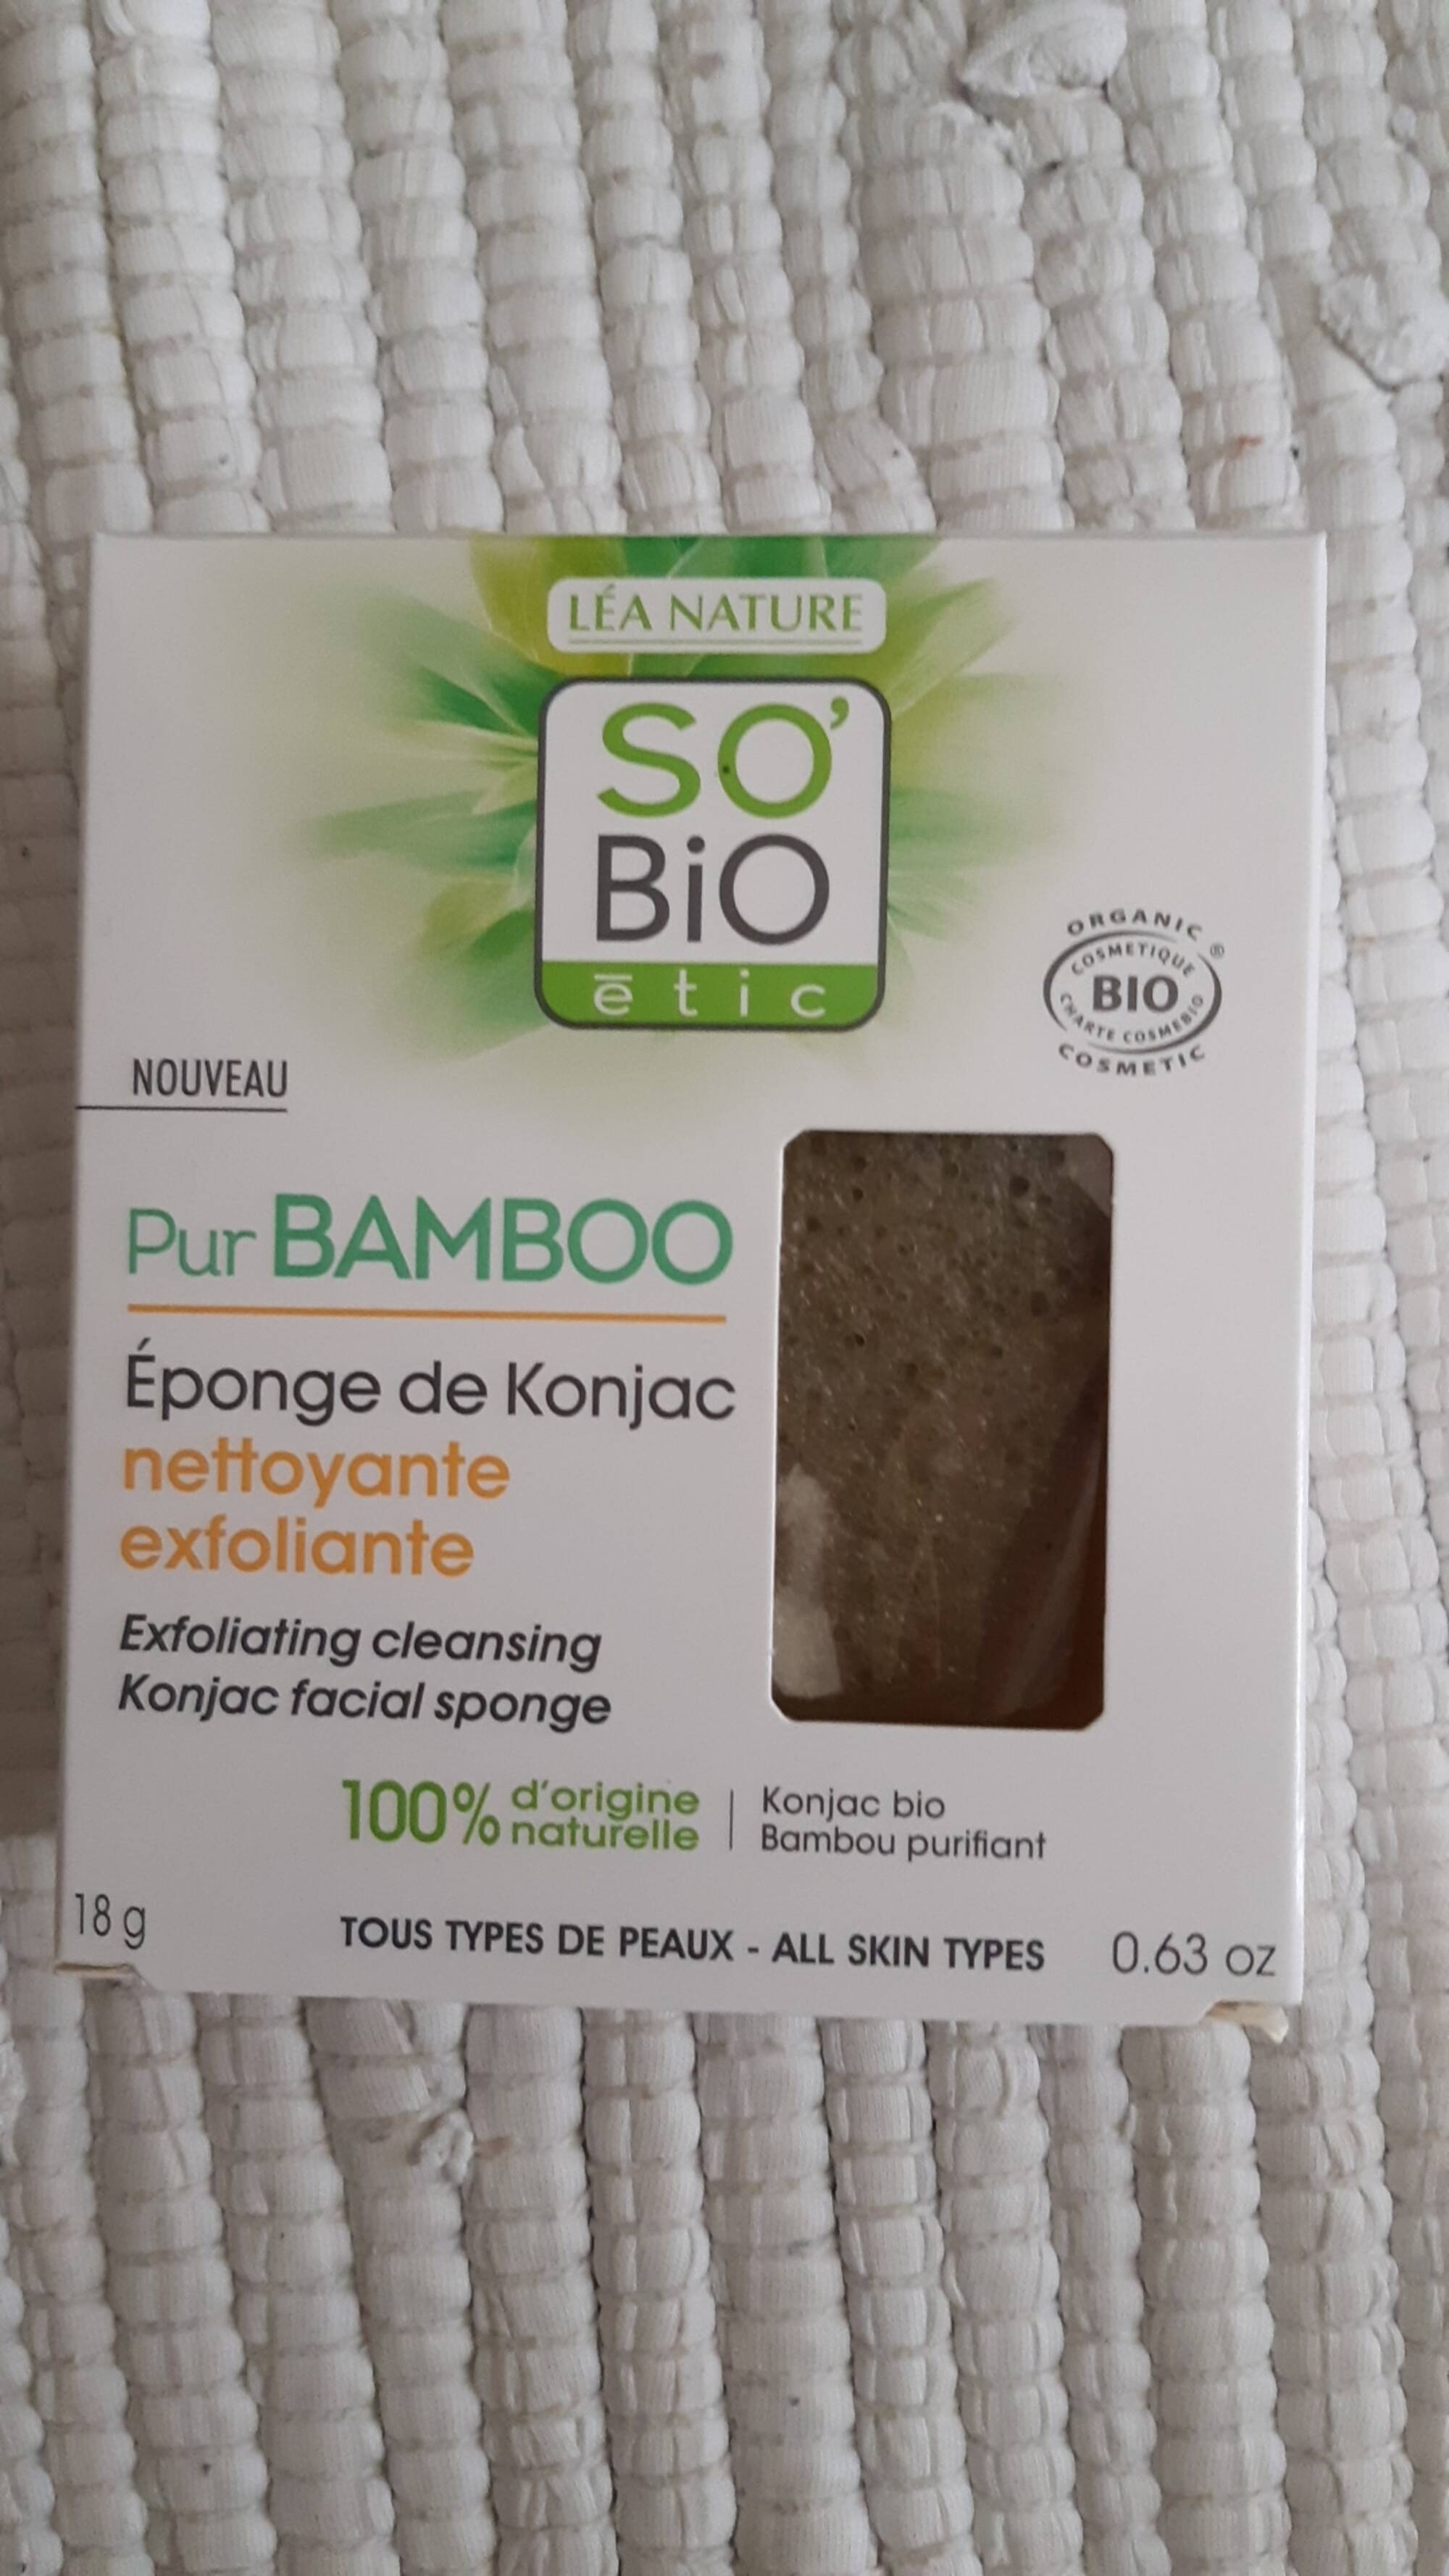 SO'BIO ÉTIC - Pur bamboo - Éponge de konjac nettoyante exfoliante